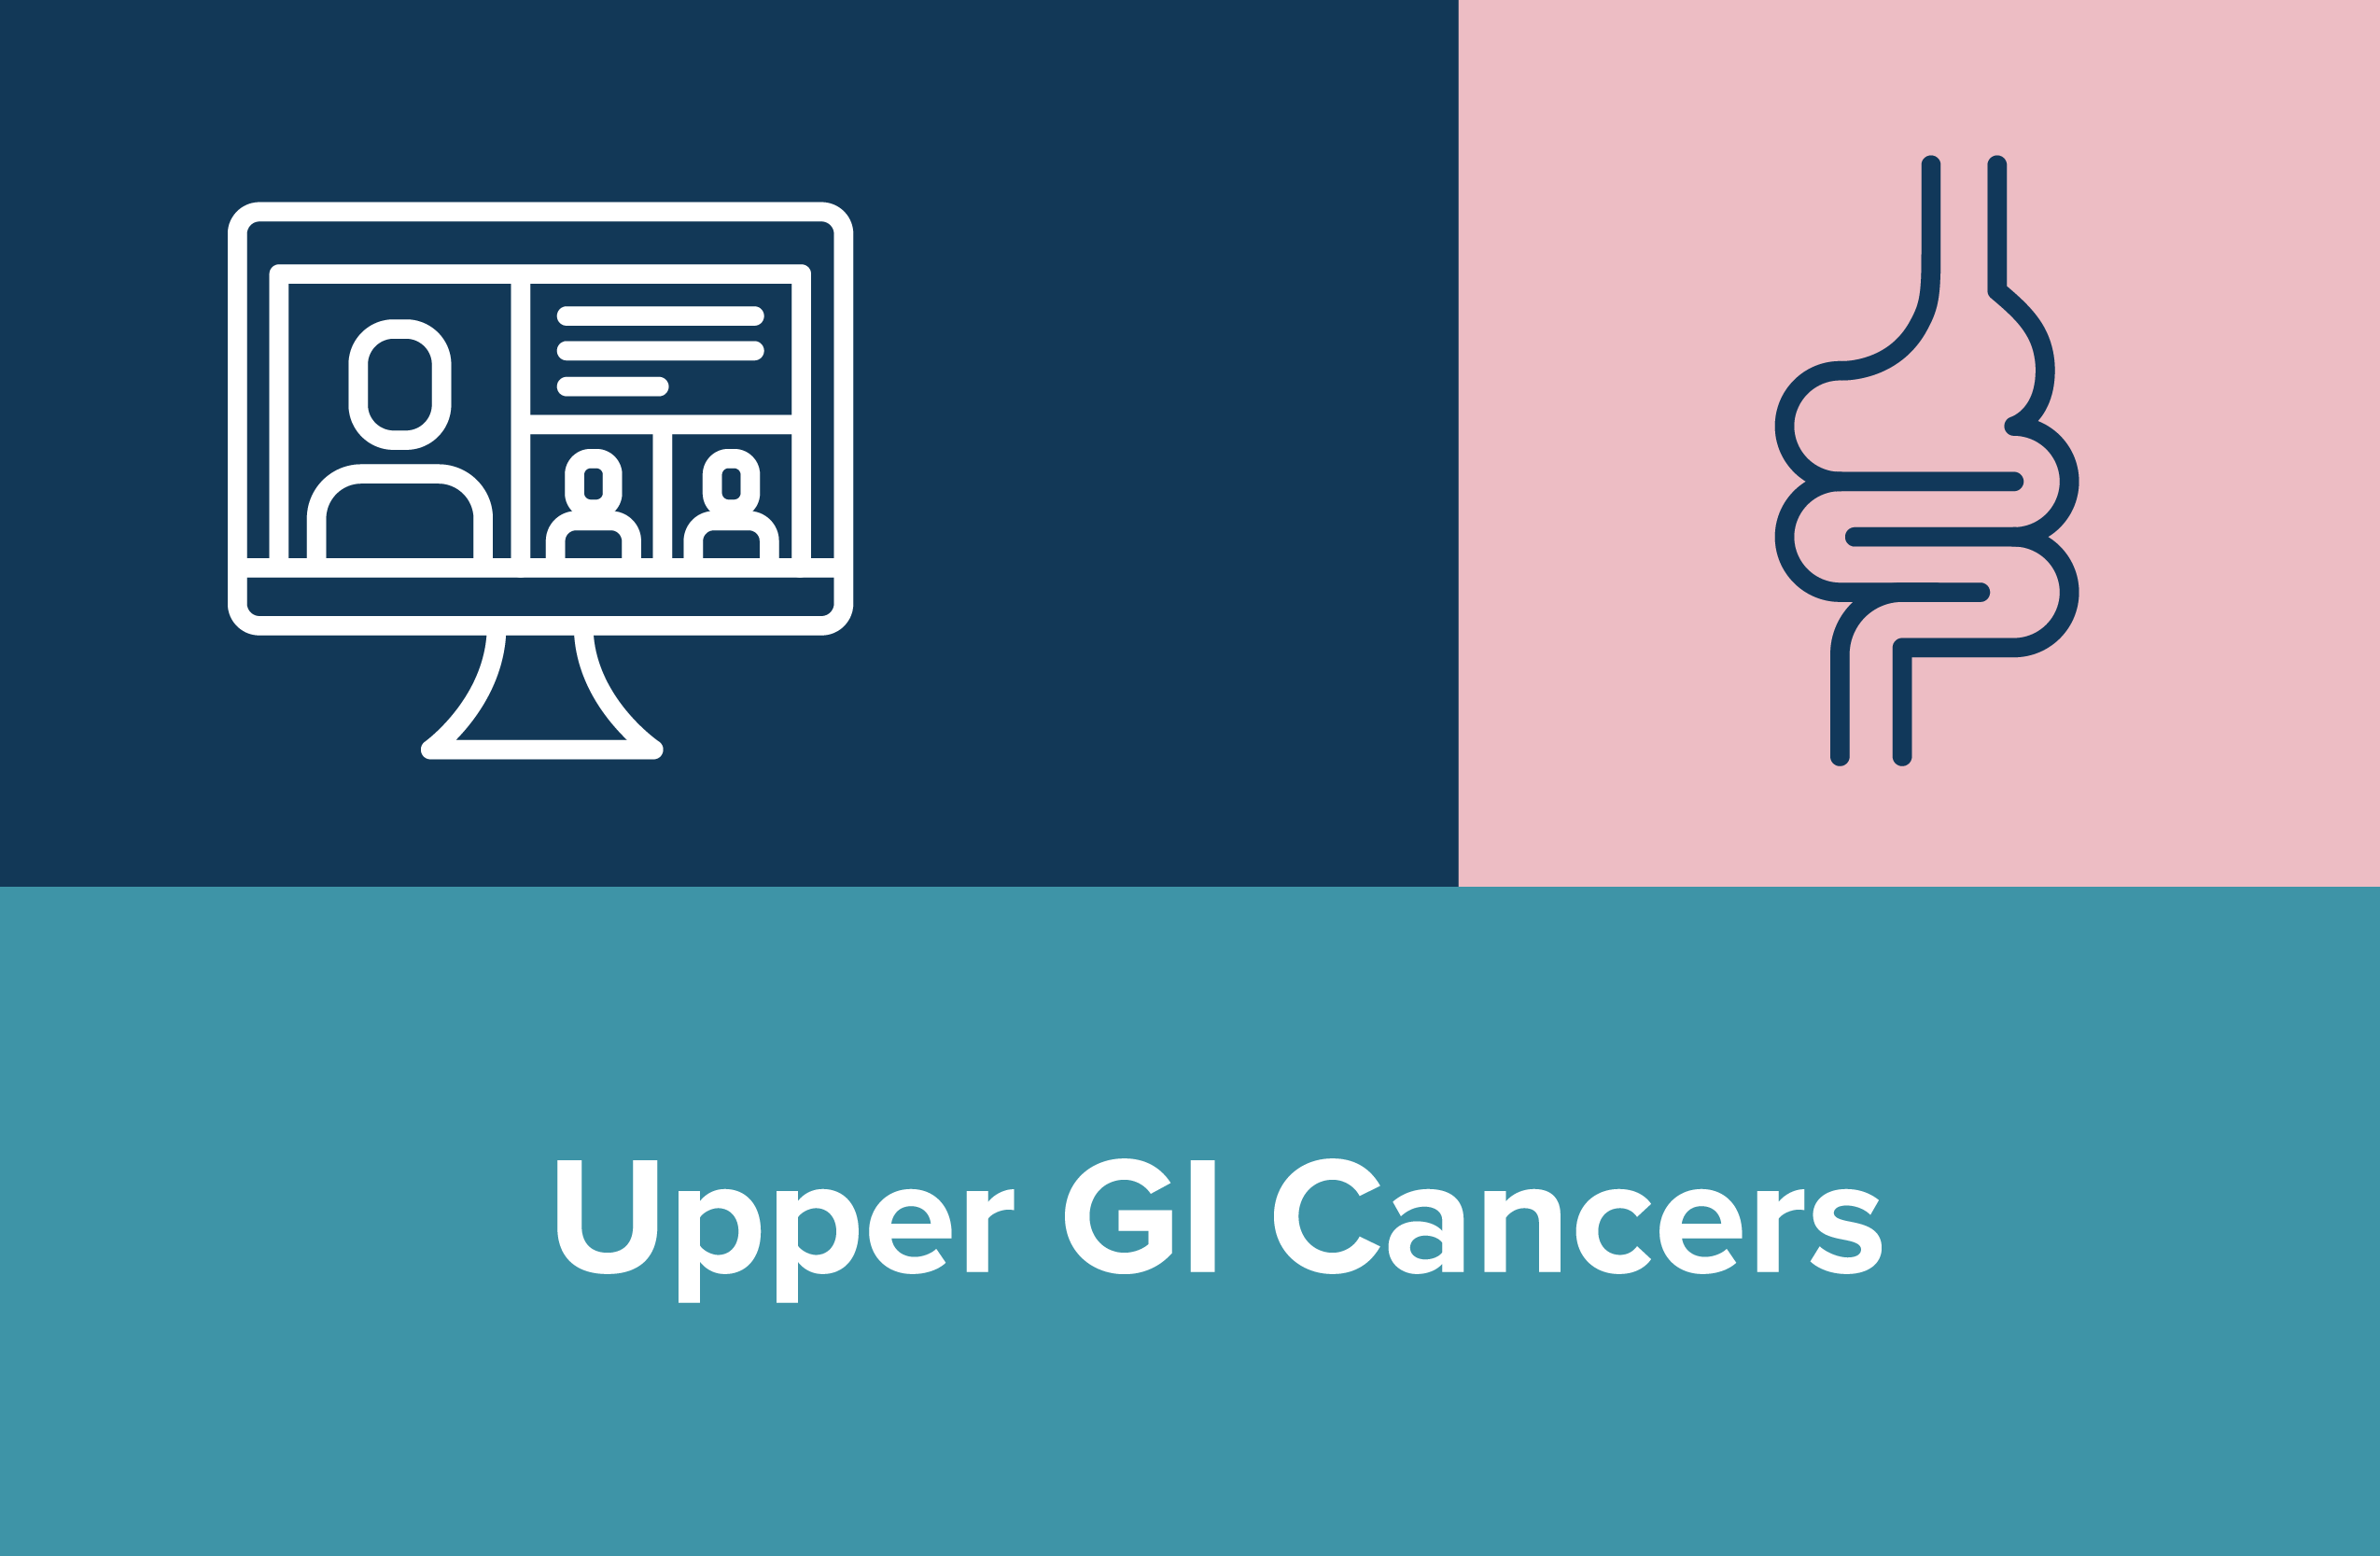 Upper GI Cancers